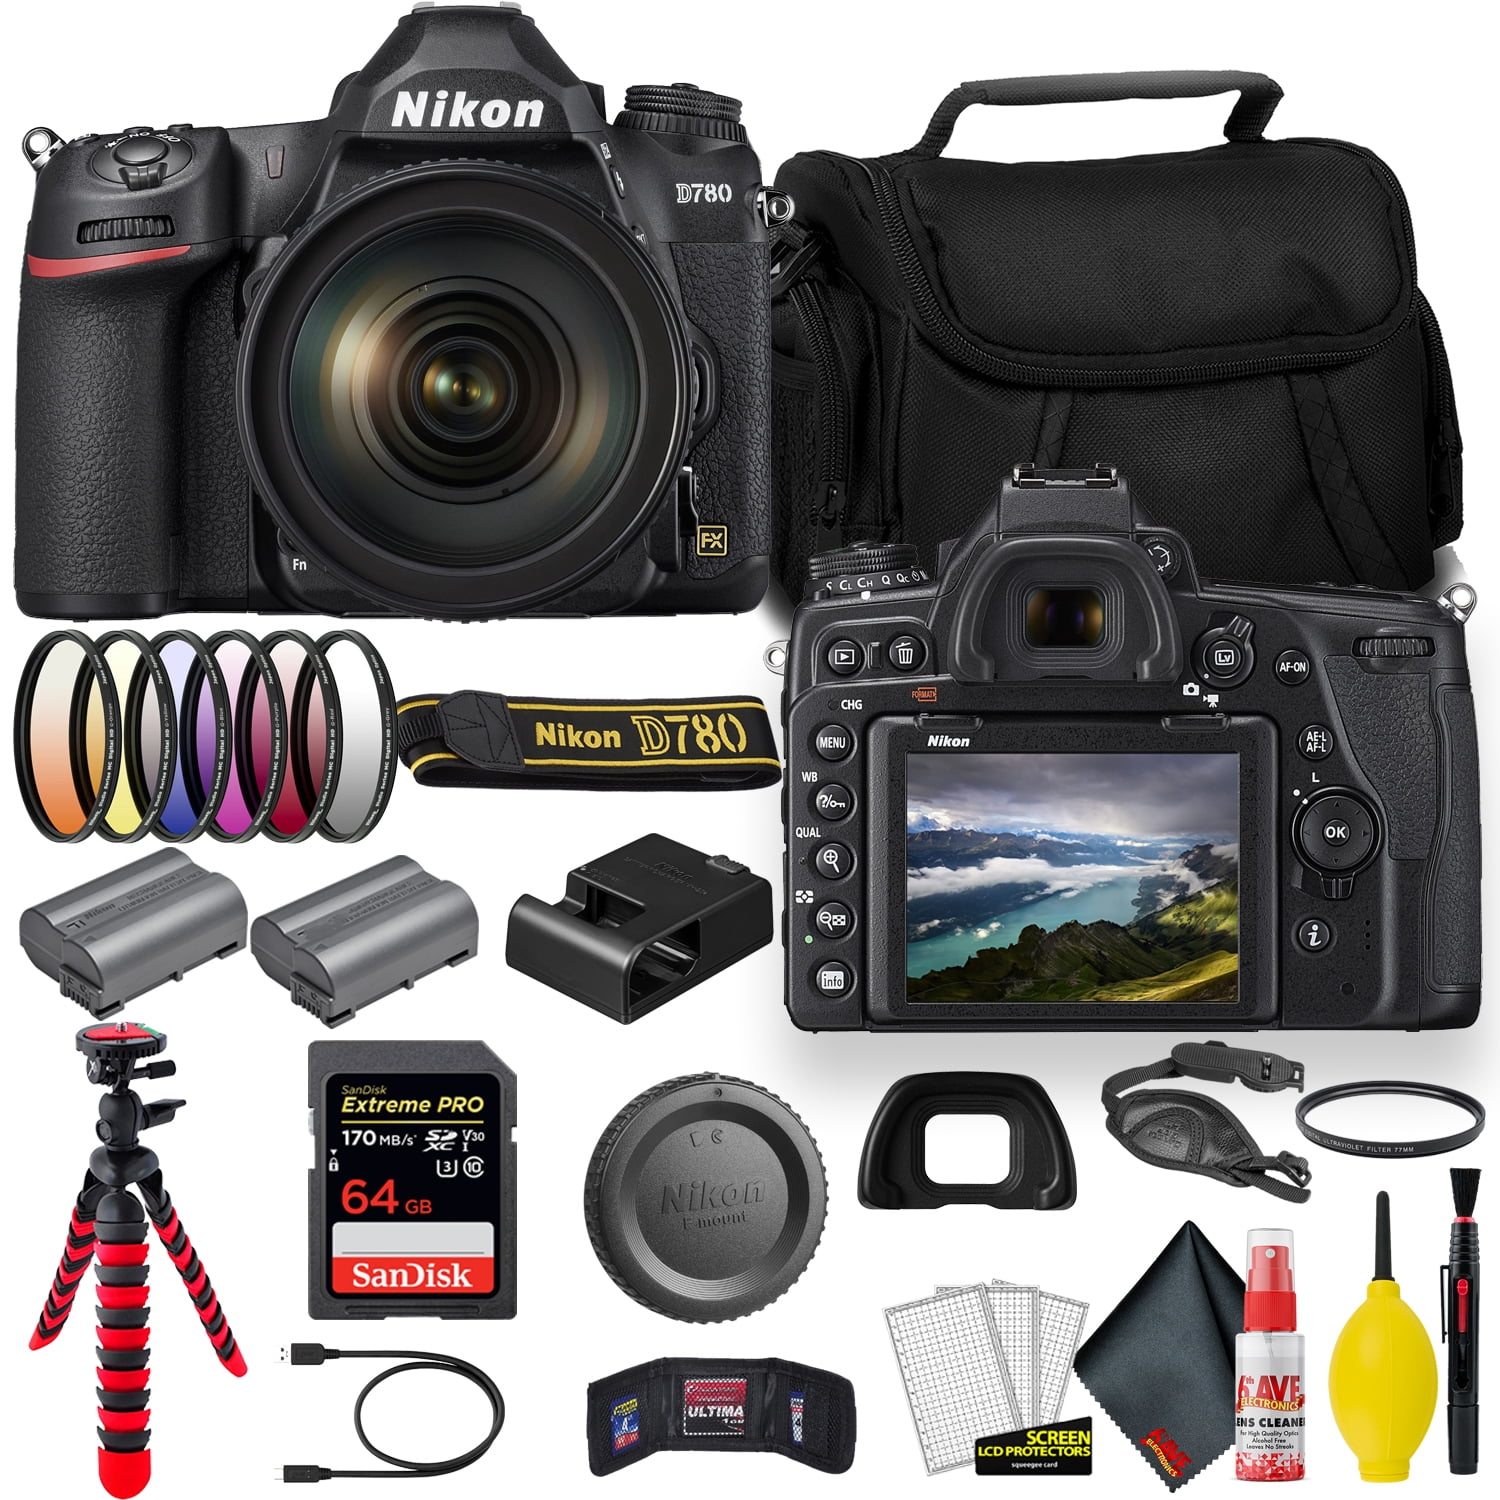 Buy Nikon D750 DSLR Camera with 24-120 mm Lens Kit Online at Best